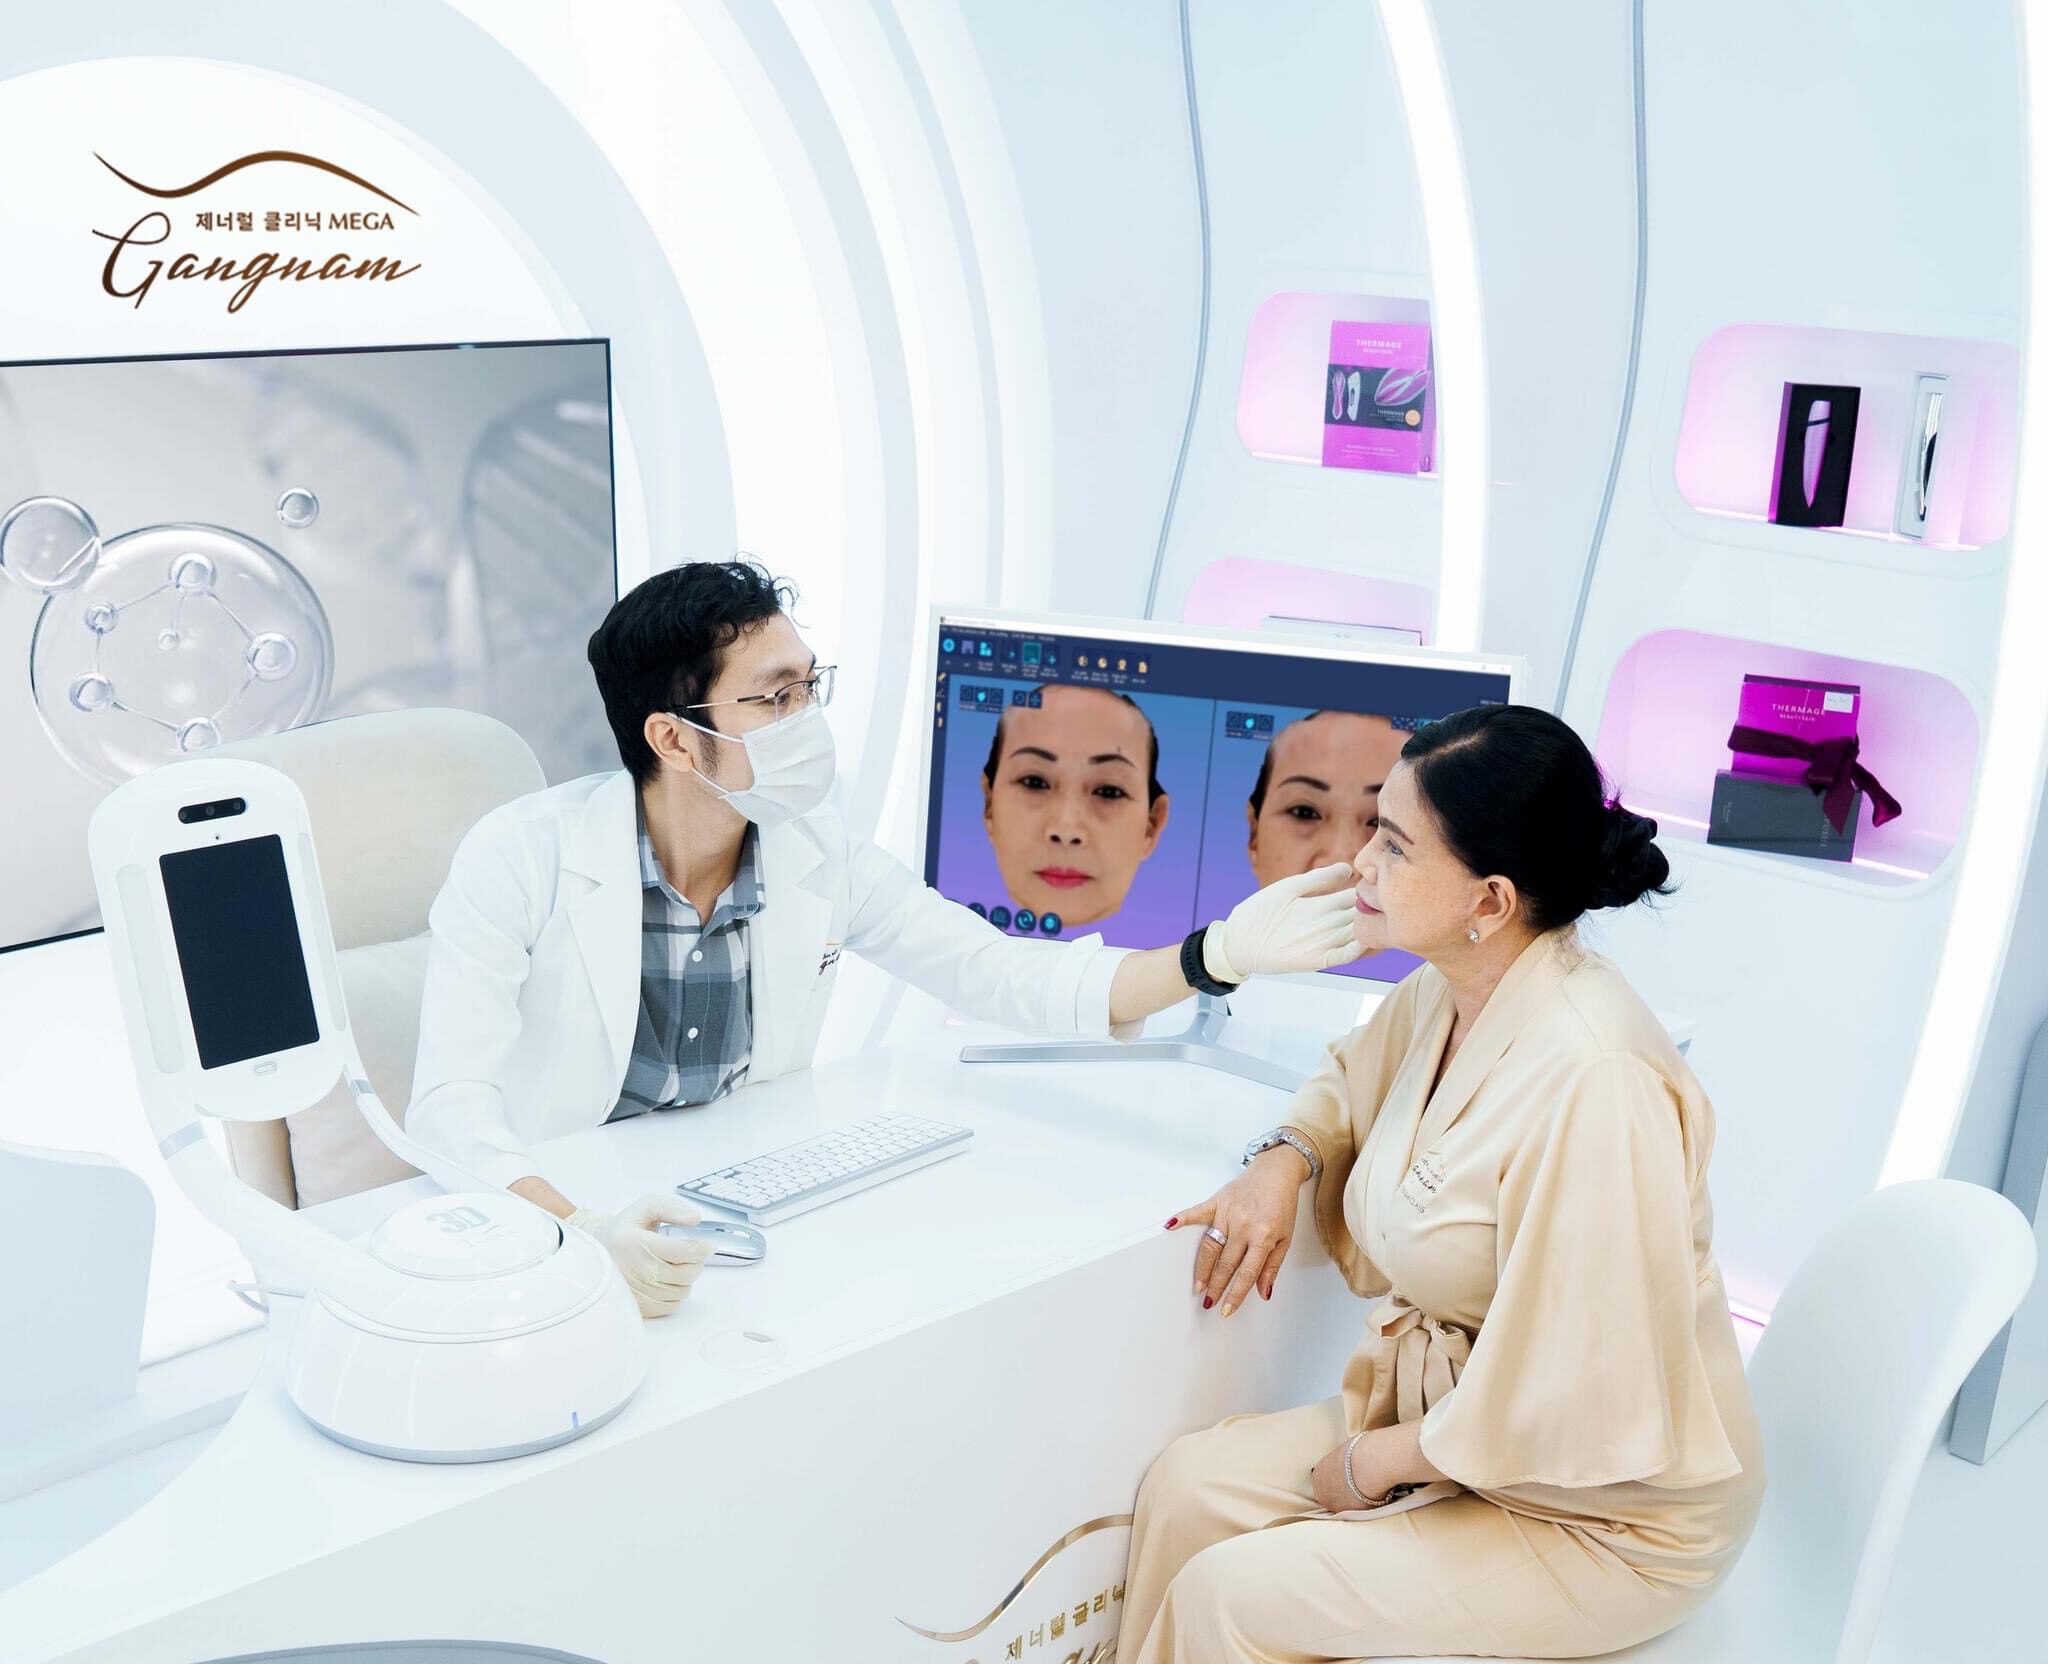 Phòng khám quốc tế Mega Gangnam sở hữu thiết bị thăm khám chuyên sâu 